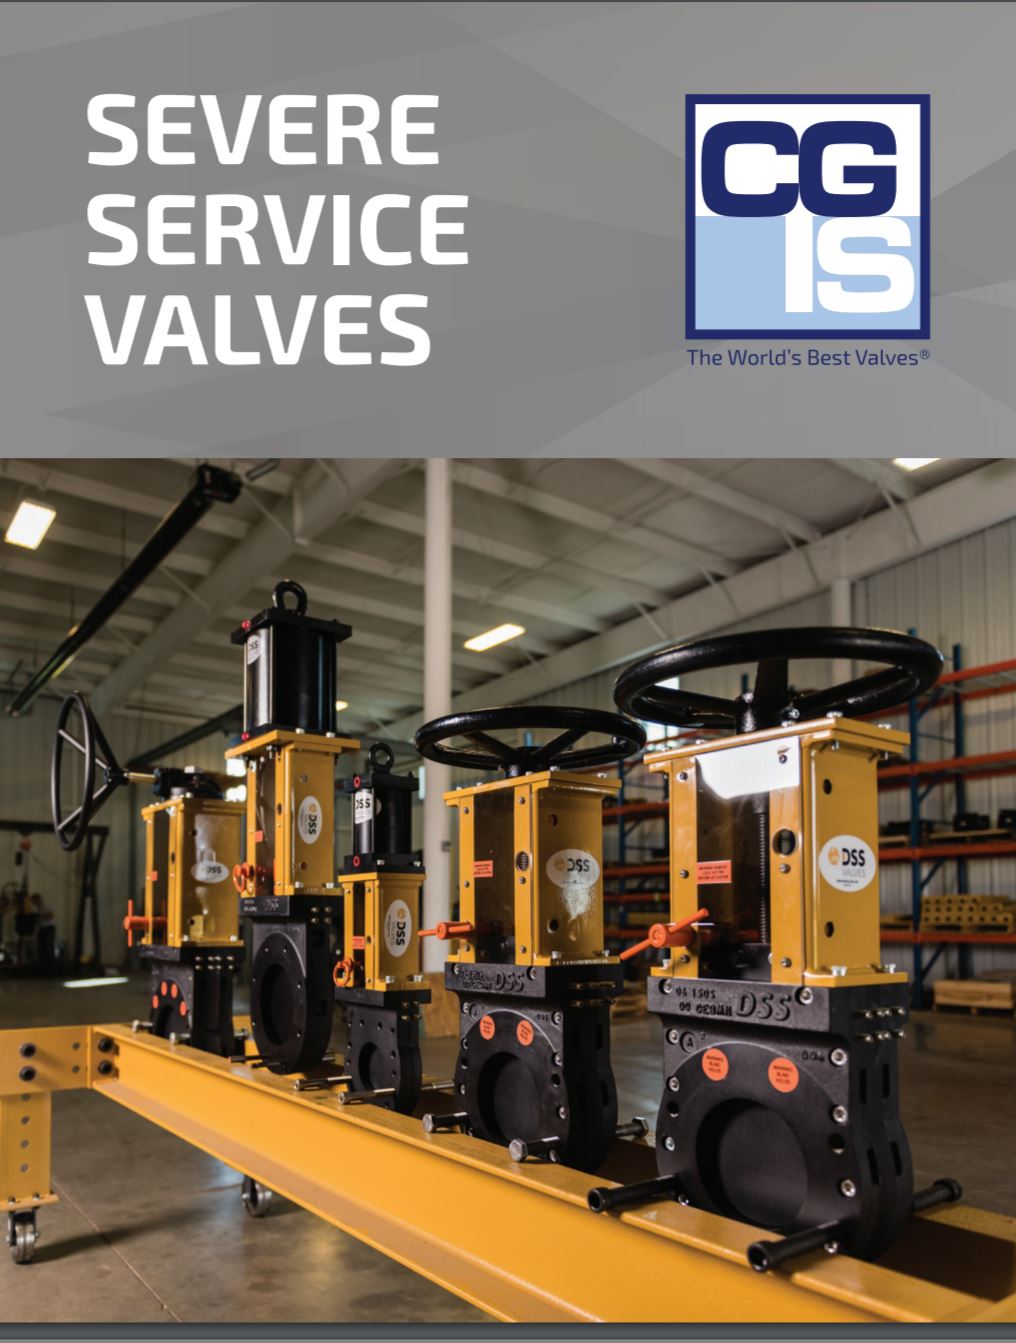 Valve Basics • CGIS: Valves, Actuators & Accessories for Severe Service